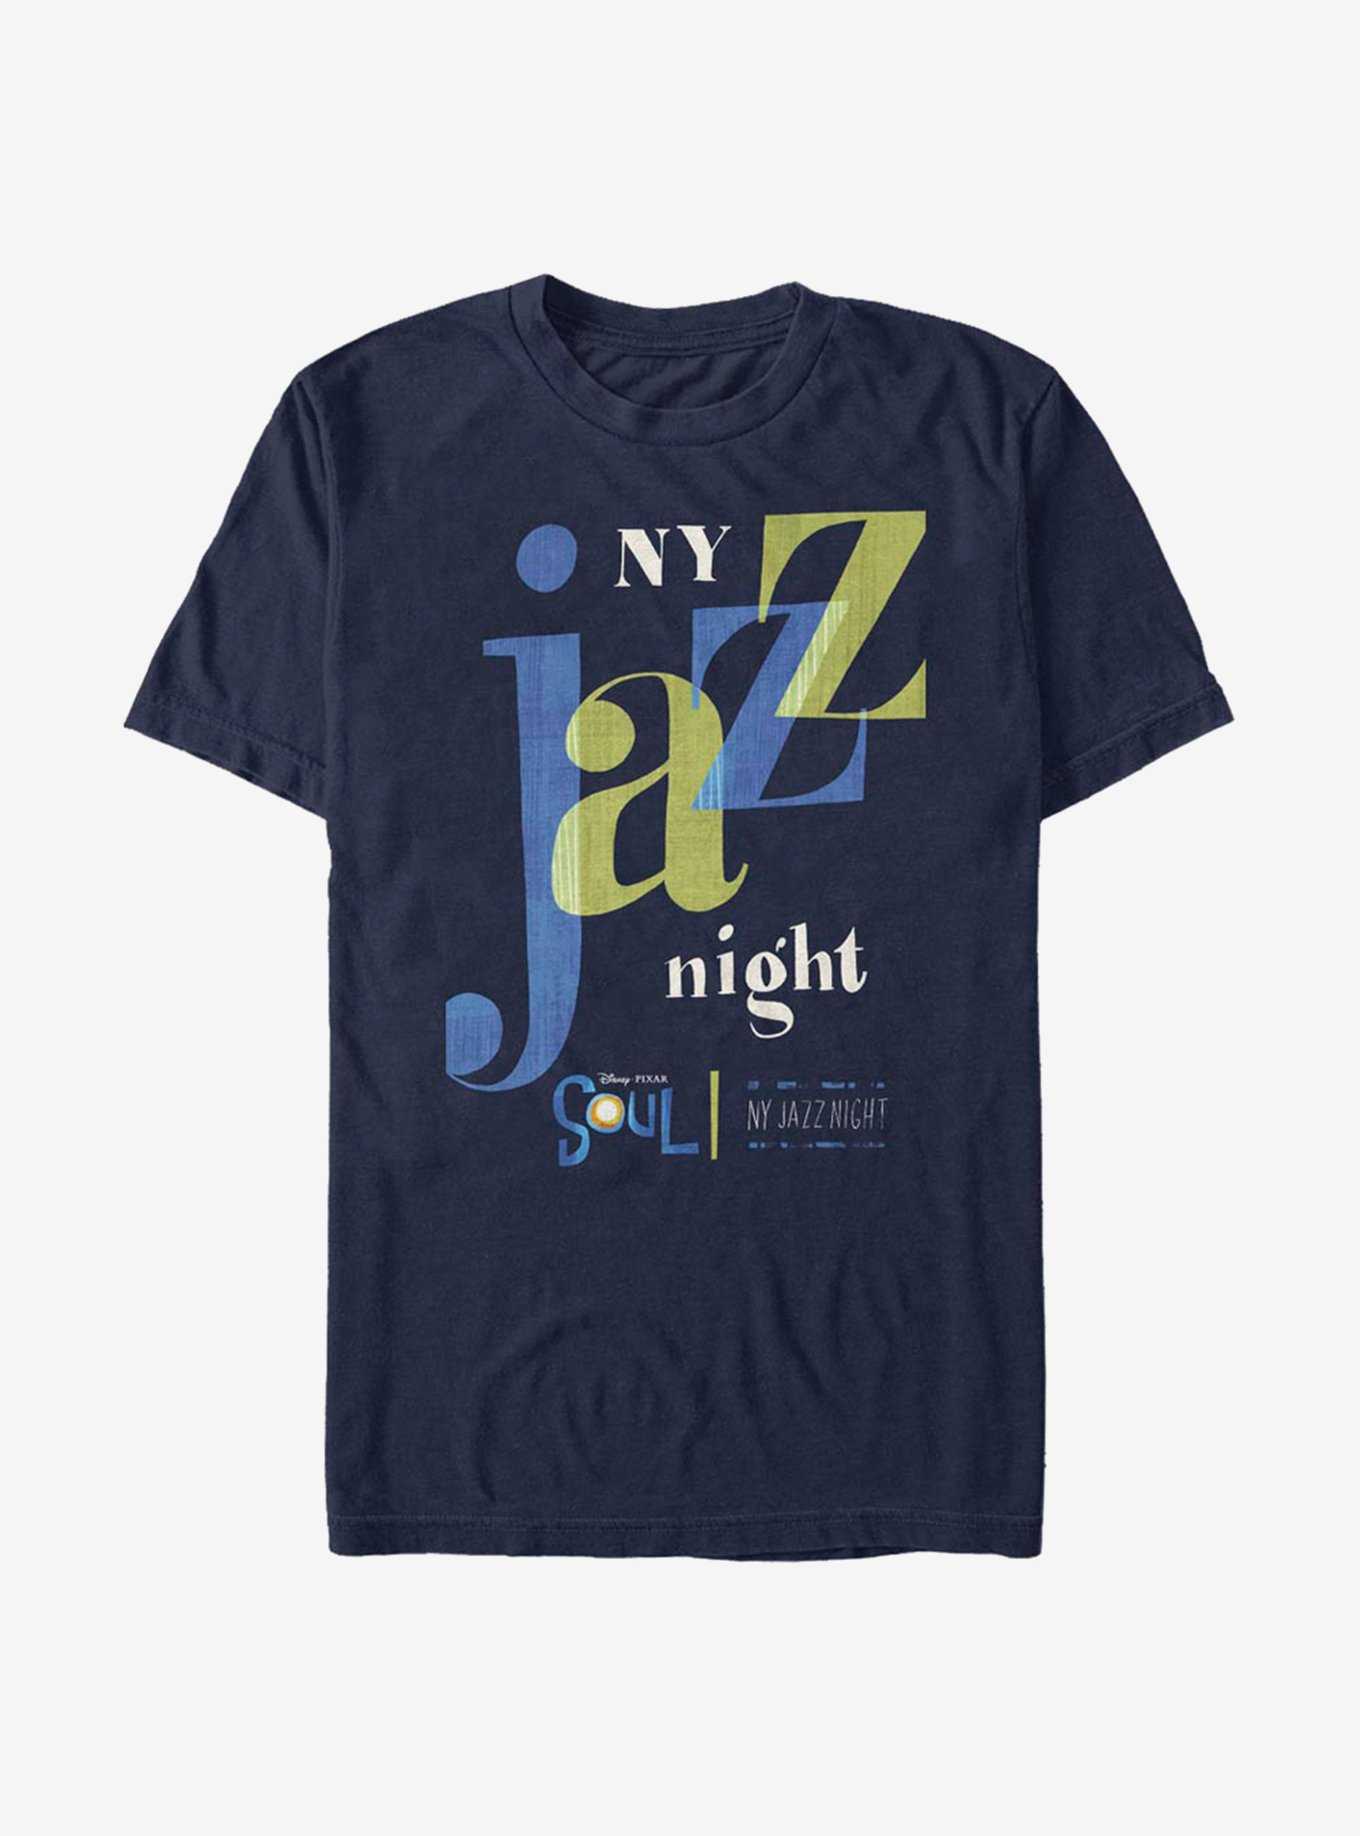 Disney Pixar Soul NY Jazz Night T-Shirt, , hi-res